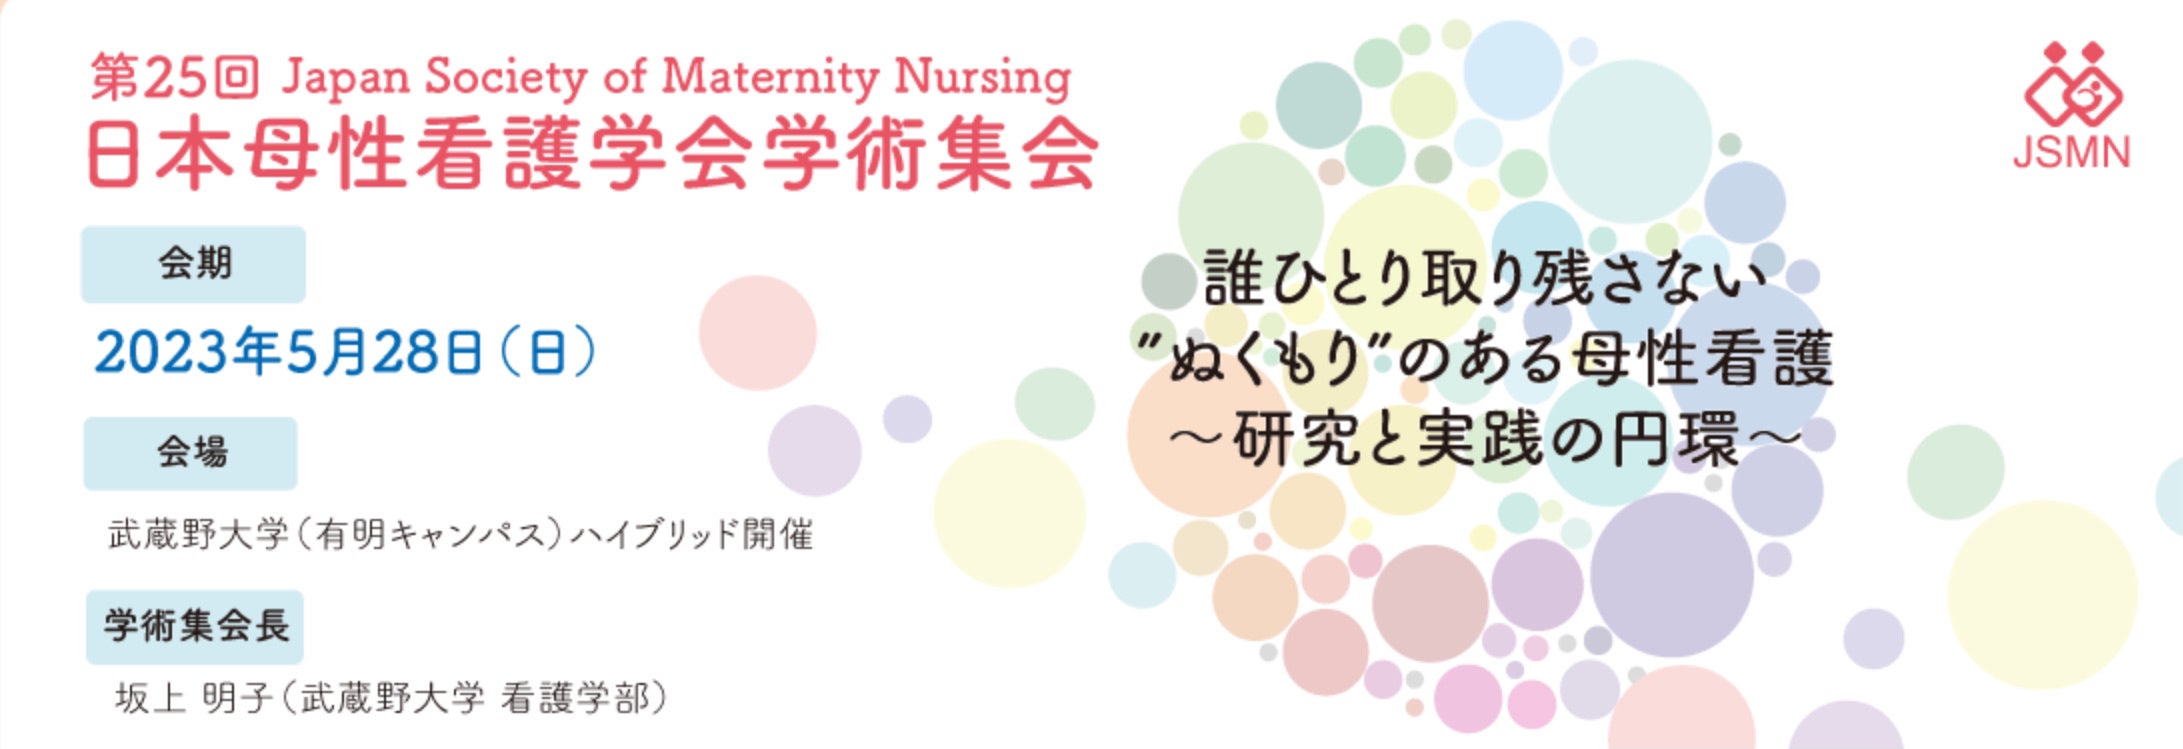 第25回日本母性看護学会学術集会にてファミワン西岡と戸田がランチョンセミナーに登壇します